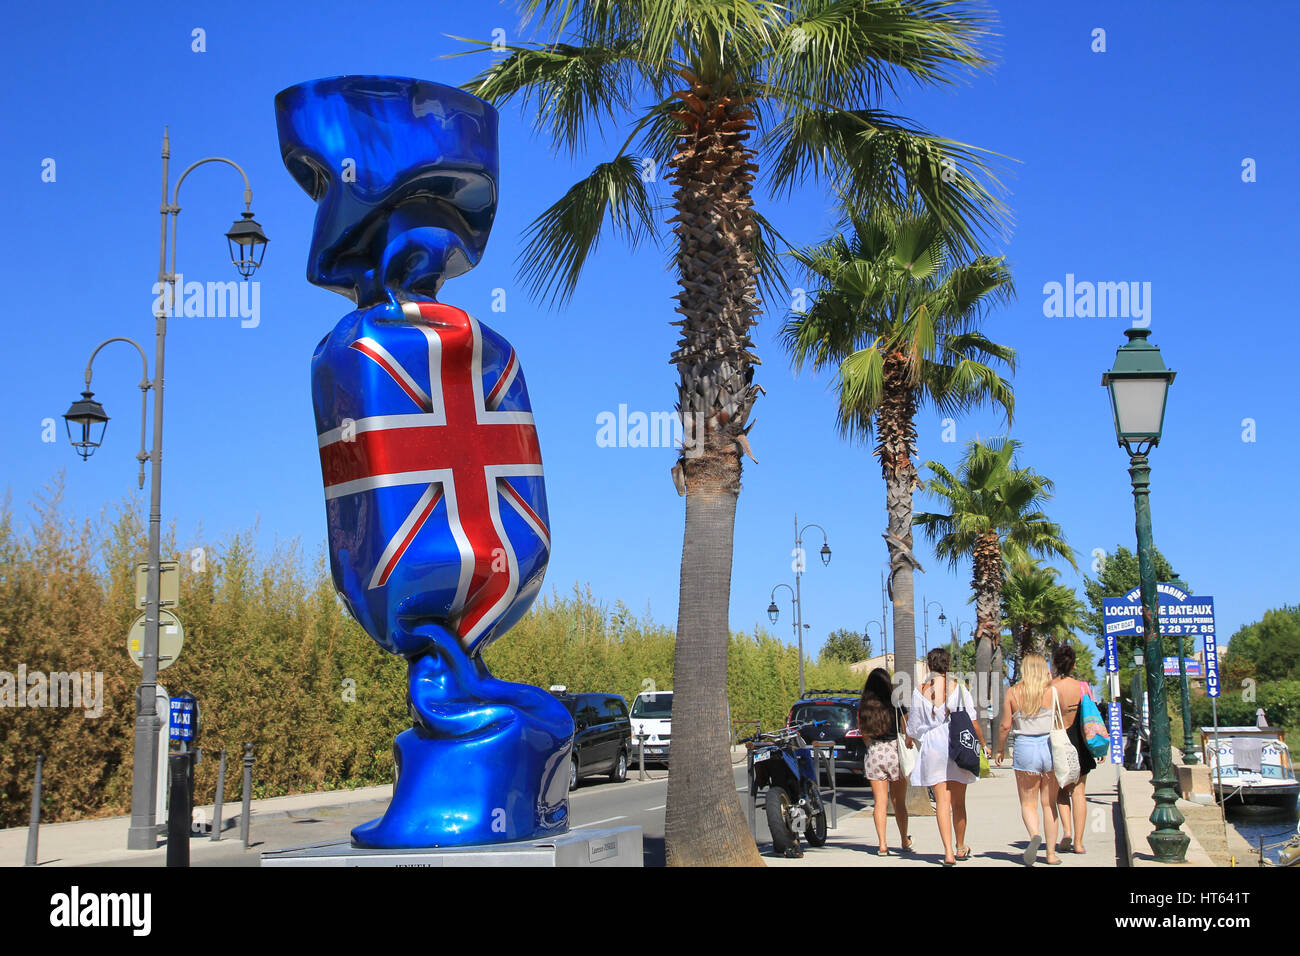 PORT GRIMAUD, Provence, France - 23 août 2016 : un bonbon géant sculpture à l'Union Flag wrapper, par l'artiste français Laurence Jenkell dans cette jolie Banque D'Images